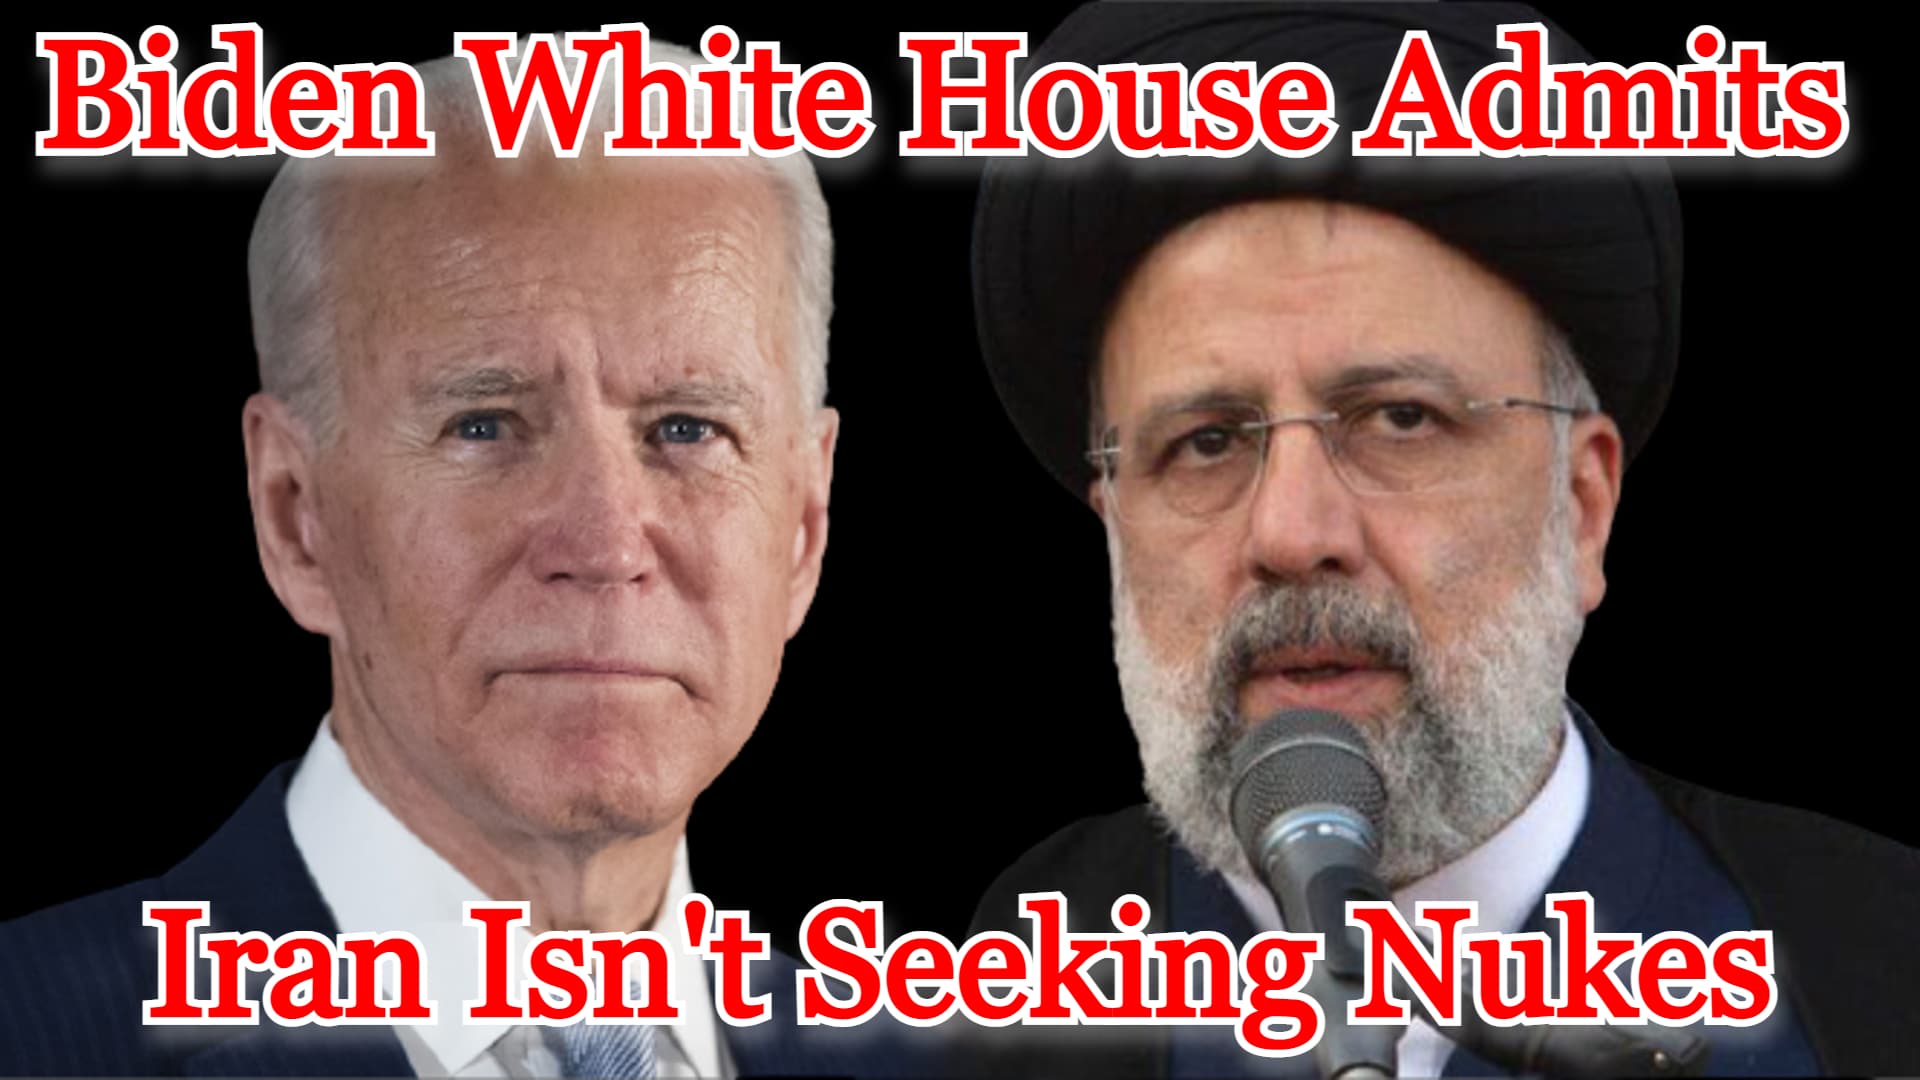 COI #345: Biden White House Admits Iran Isn’t Seeking Nukes